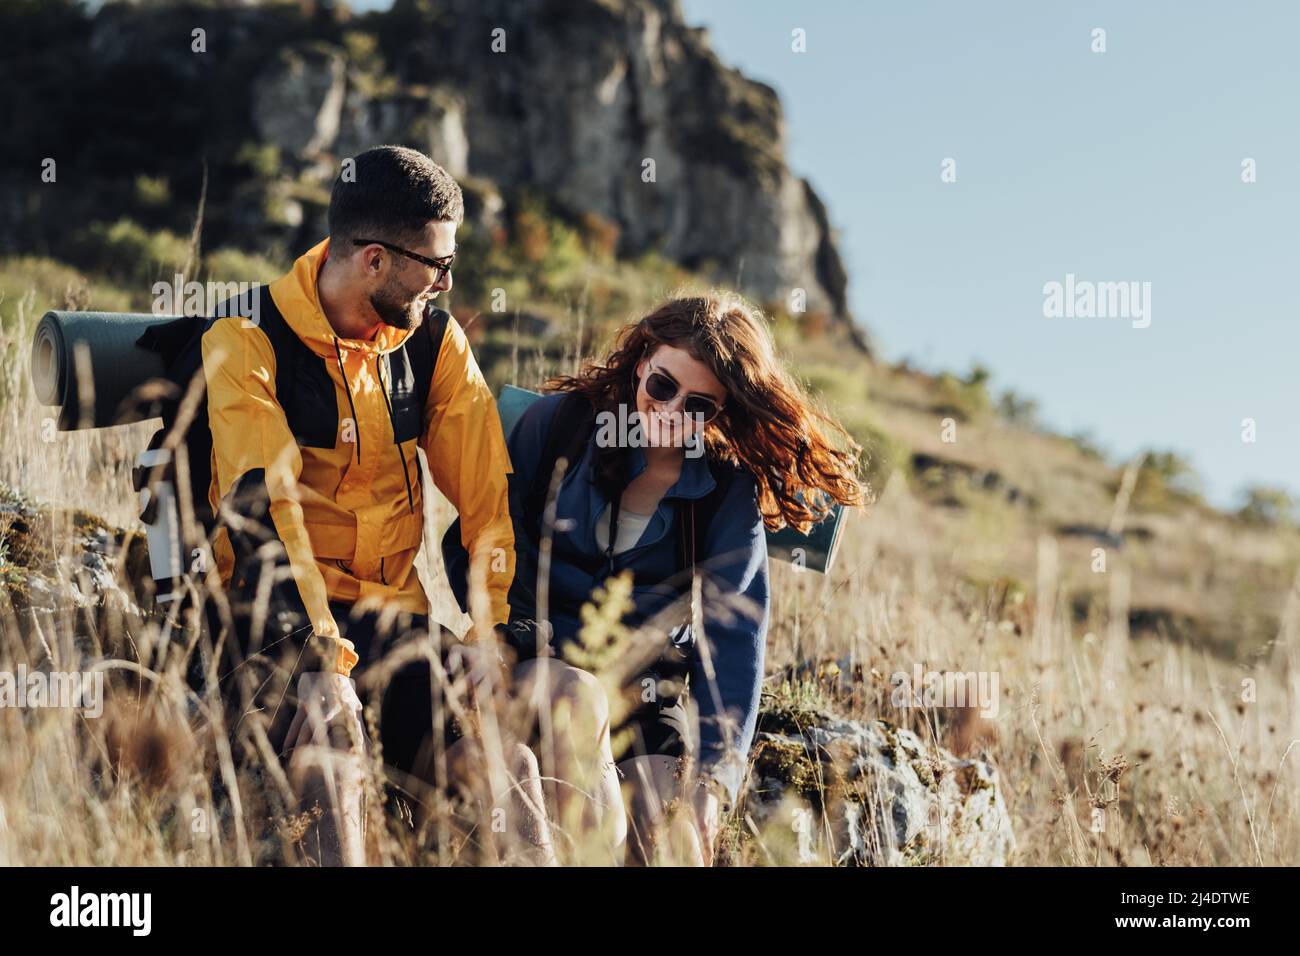 Zwei junge Reisende Mann und Frau machten während ihrer Wanderung auf dem Gipfel des Hügels einen Halt, um sich auszuruhen Stockfoto